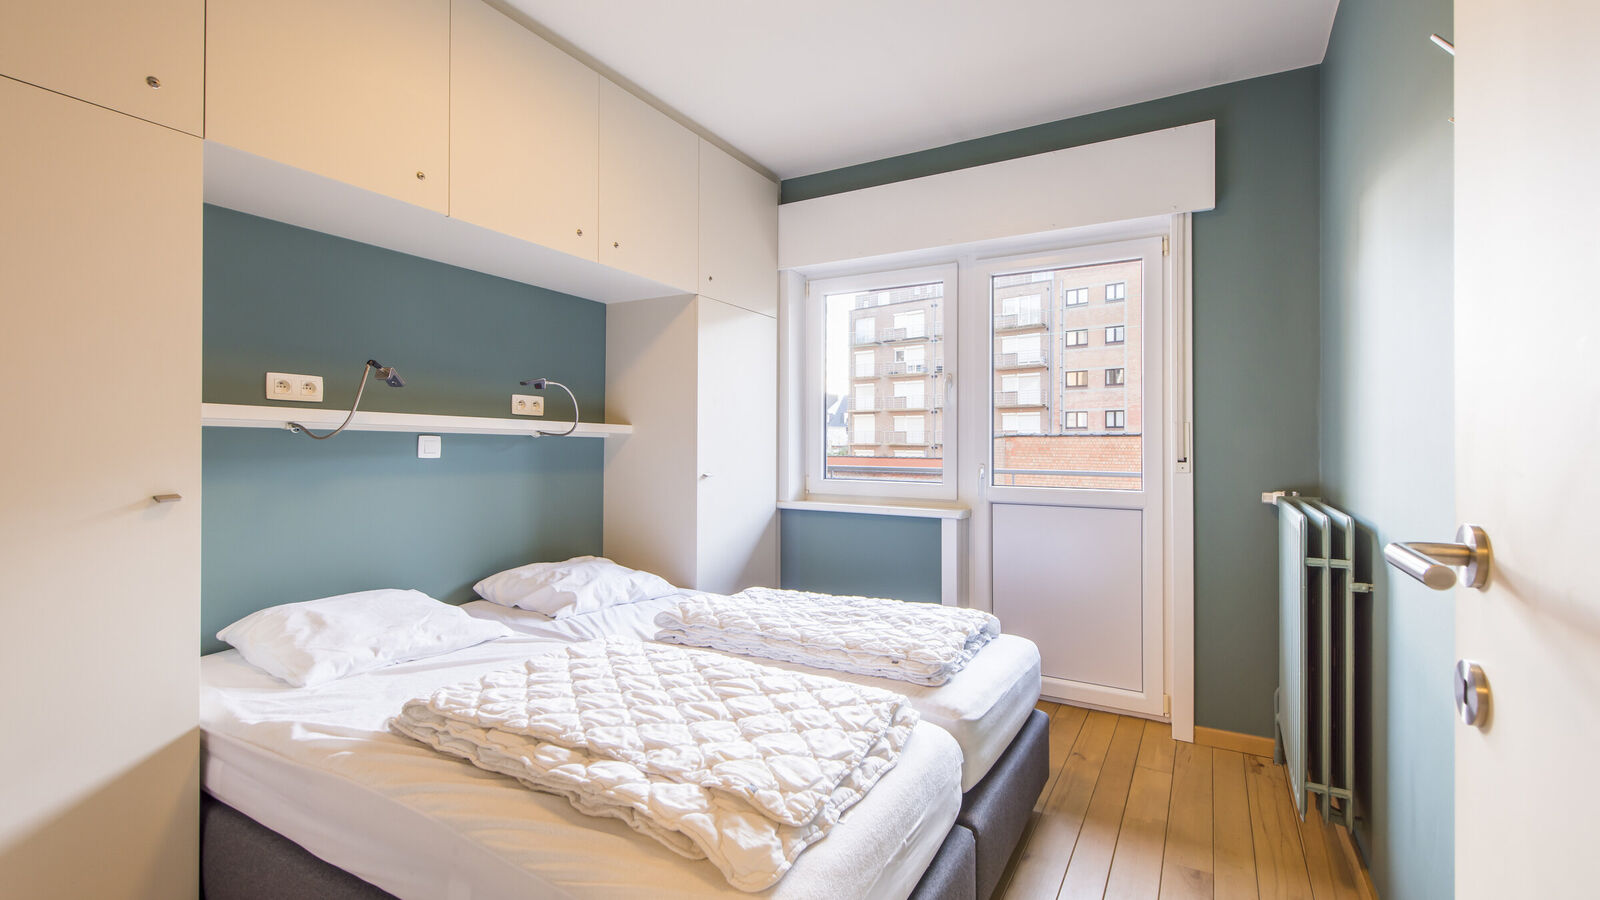 App. 3 bedrooms in Koksijde